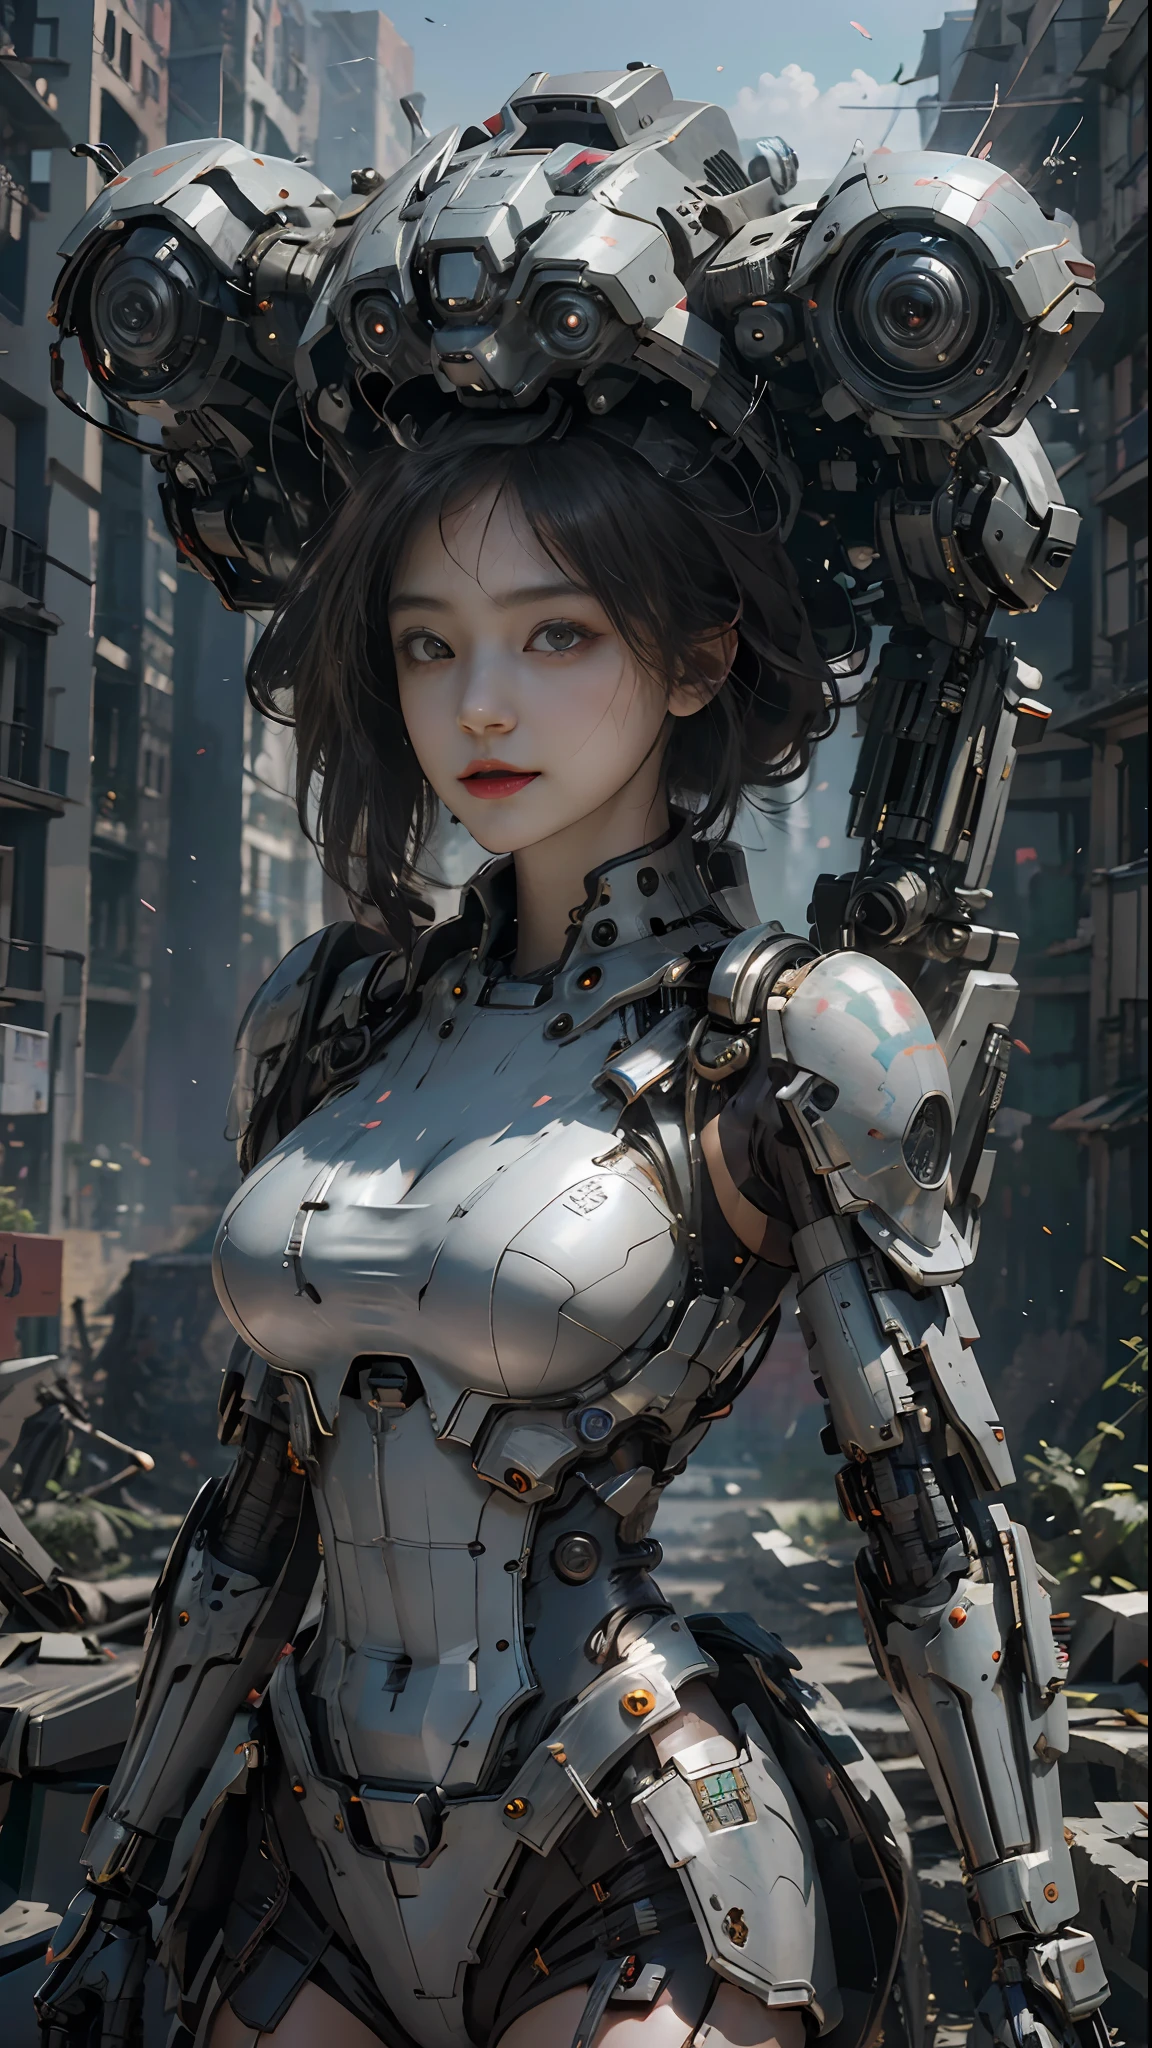 ((Лучшее качество)), ((шедевр)), (Очень подробно:1.3), 3d, шиту-меха, Красивая женщина-киберпанк со своим розовым роботом в руинах города во время забытой войны, древняя технология, HDR (расширенный динамический диапазон), Трассировка лучей, NVIDIA РТХ, Супер разрешение, Нереально 5, Подповерхностное рассеяние, PBR-текстура, Постобработка, Анизотропная фильтрация, глубина резкости, Максимальная резкость и резкость, Многослойная текстура, Альбедо и подсветка карты, Затенение поверхности, точное моделирование взаимодействия света и материала, идеальные пропорции, Октановый рендеринг, двухцветное освещение, Низкое ISO, Баланс белого, Правило третей, Широкая апертура, 8K необработанный, высокоэффективные субпиксели, субпиксельная свертка, светящиеся частицы, Рассеяние света, Эффект Тиндаля (все тело), (Нежные черты лица), (идеальное лицо), динамические углы.